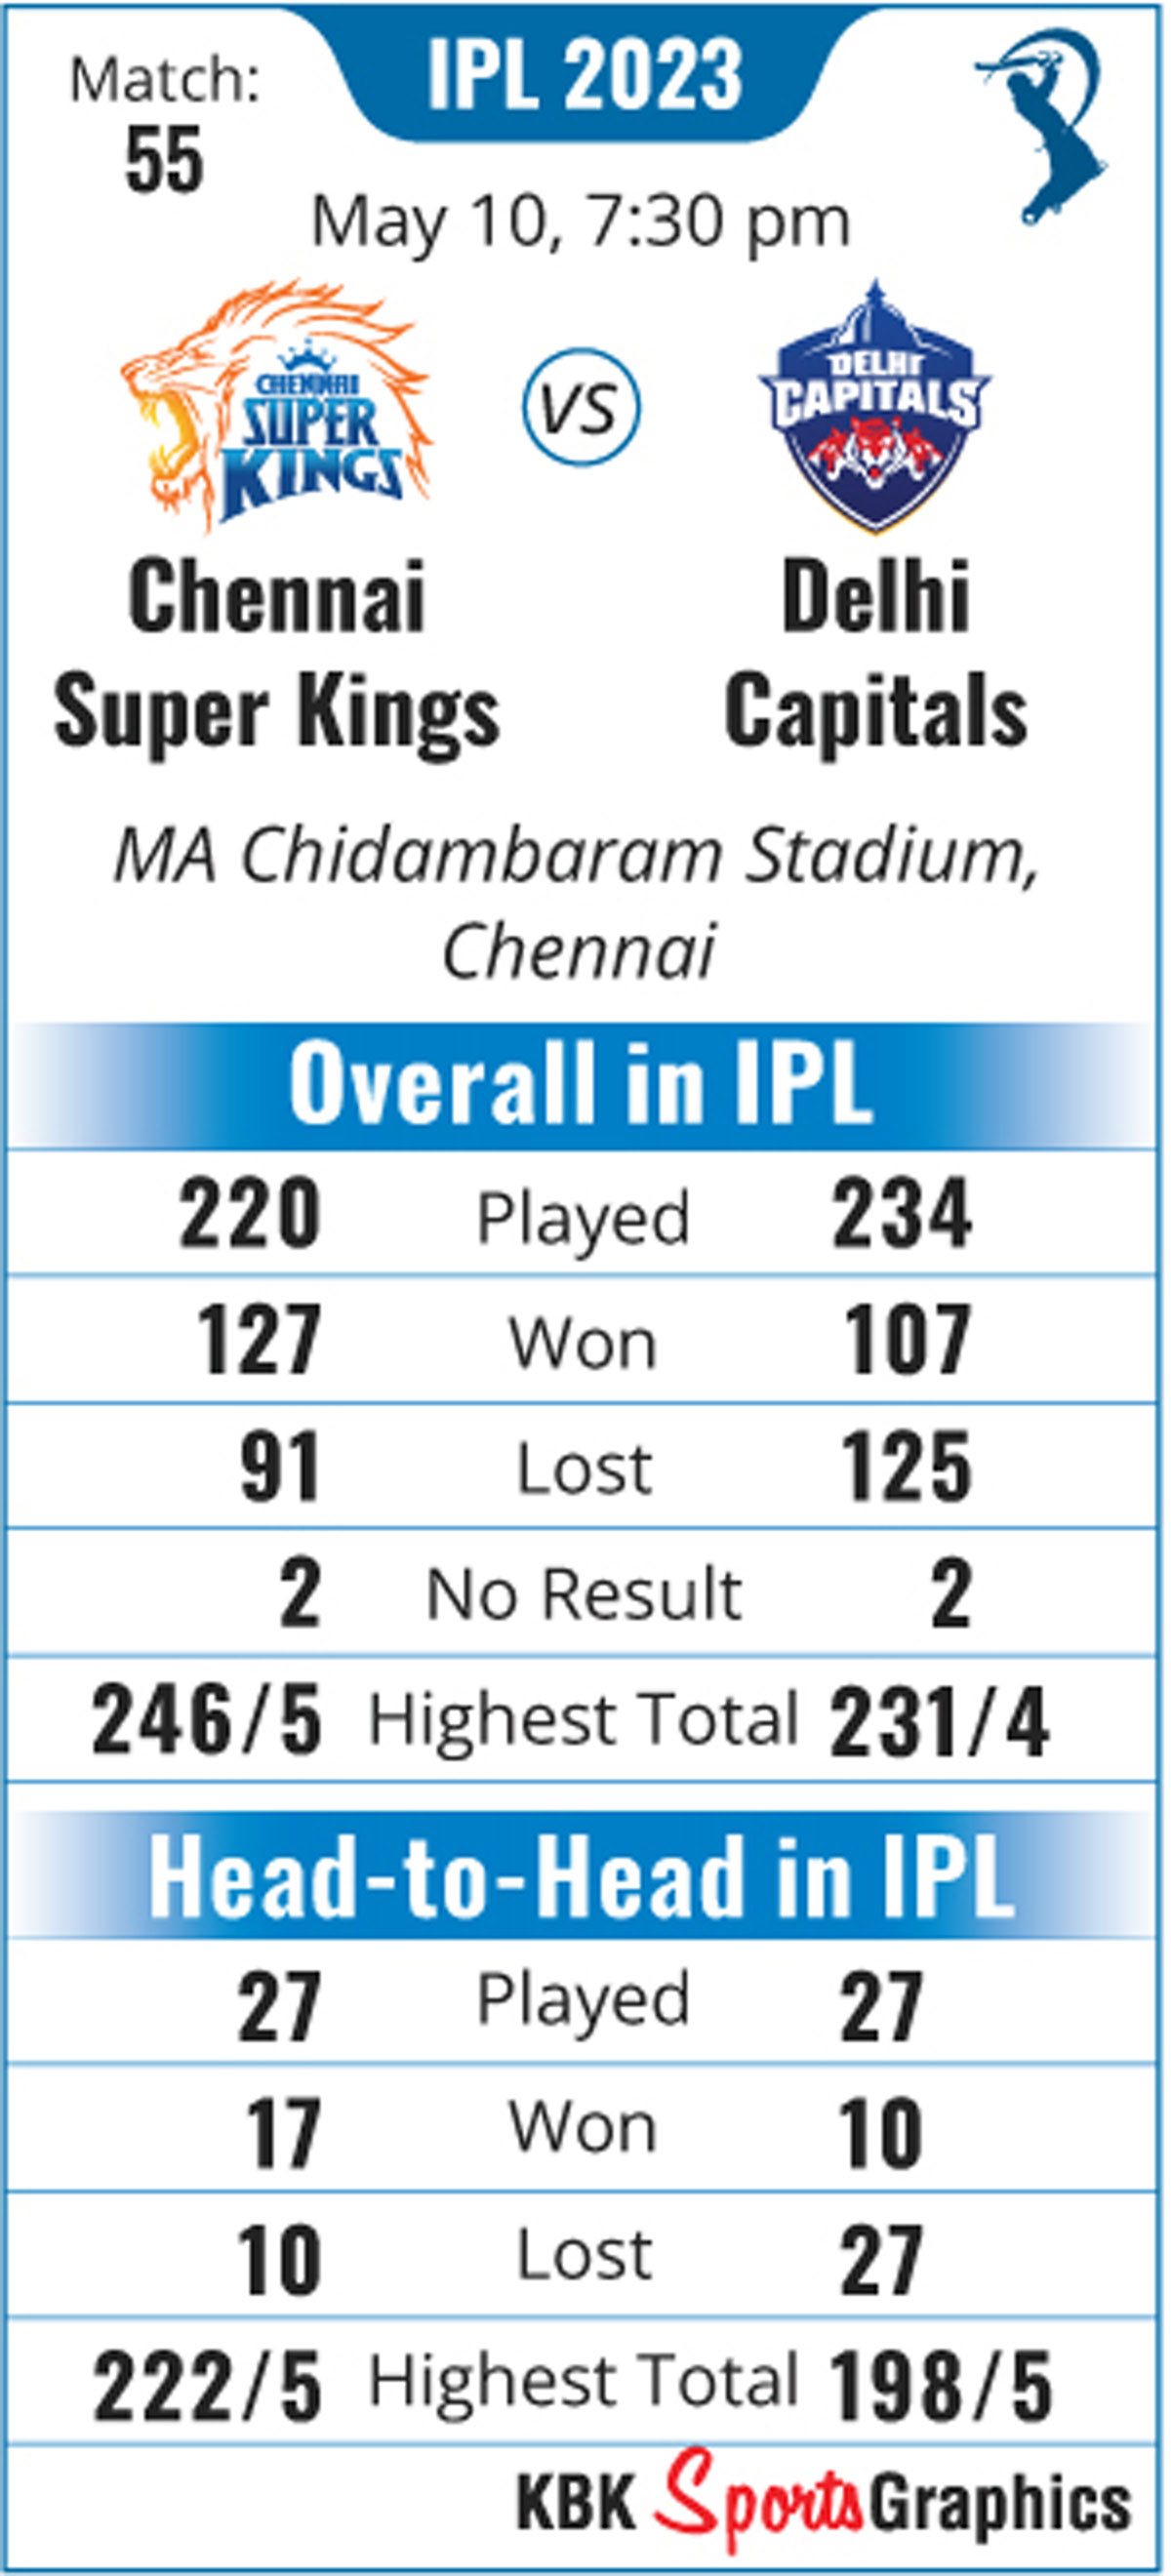 IPL 2023: SEE: The New Delhi Capitals Jersey - Rediff.com